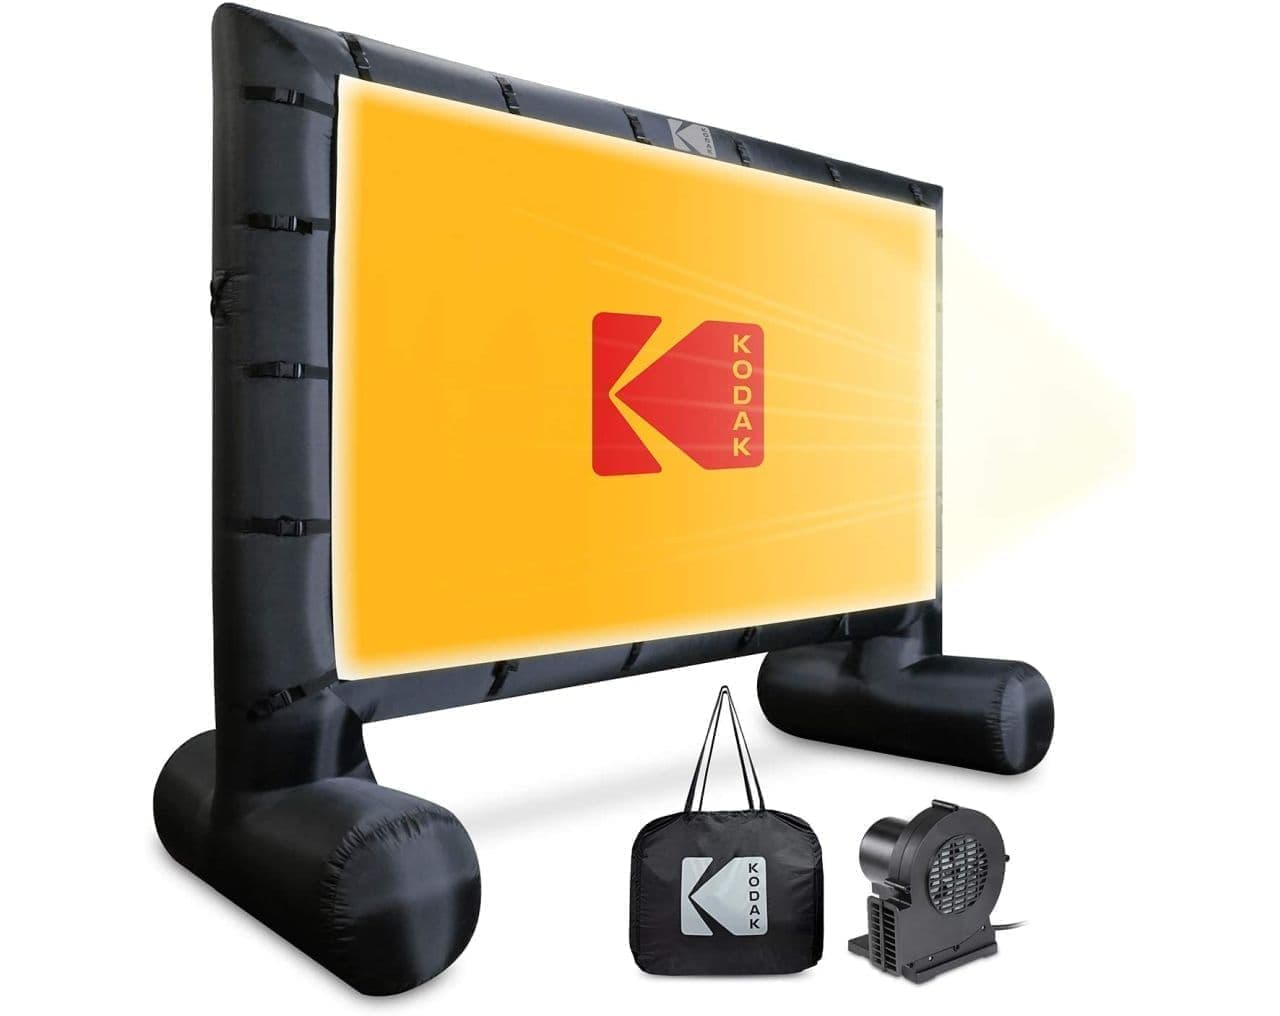 キャンプ場や家の庭で動画を観たい！KODAKが高さ約3メートル174インチサイズのプロジェクタースクリーンを販売していますよ